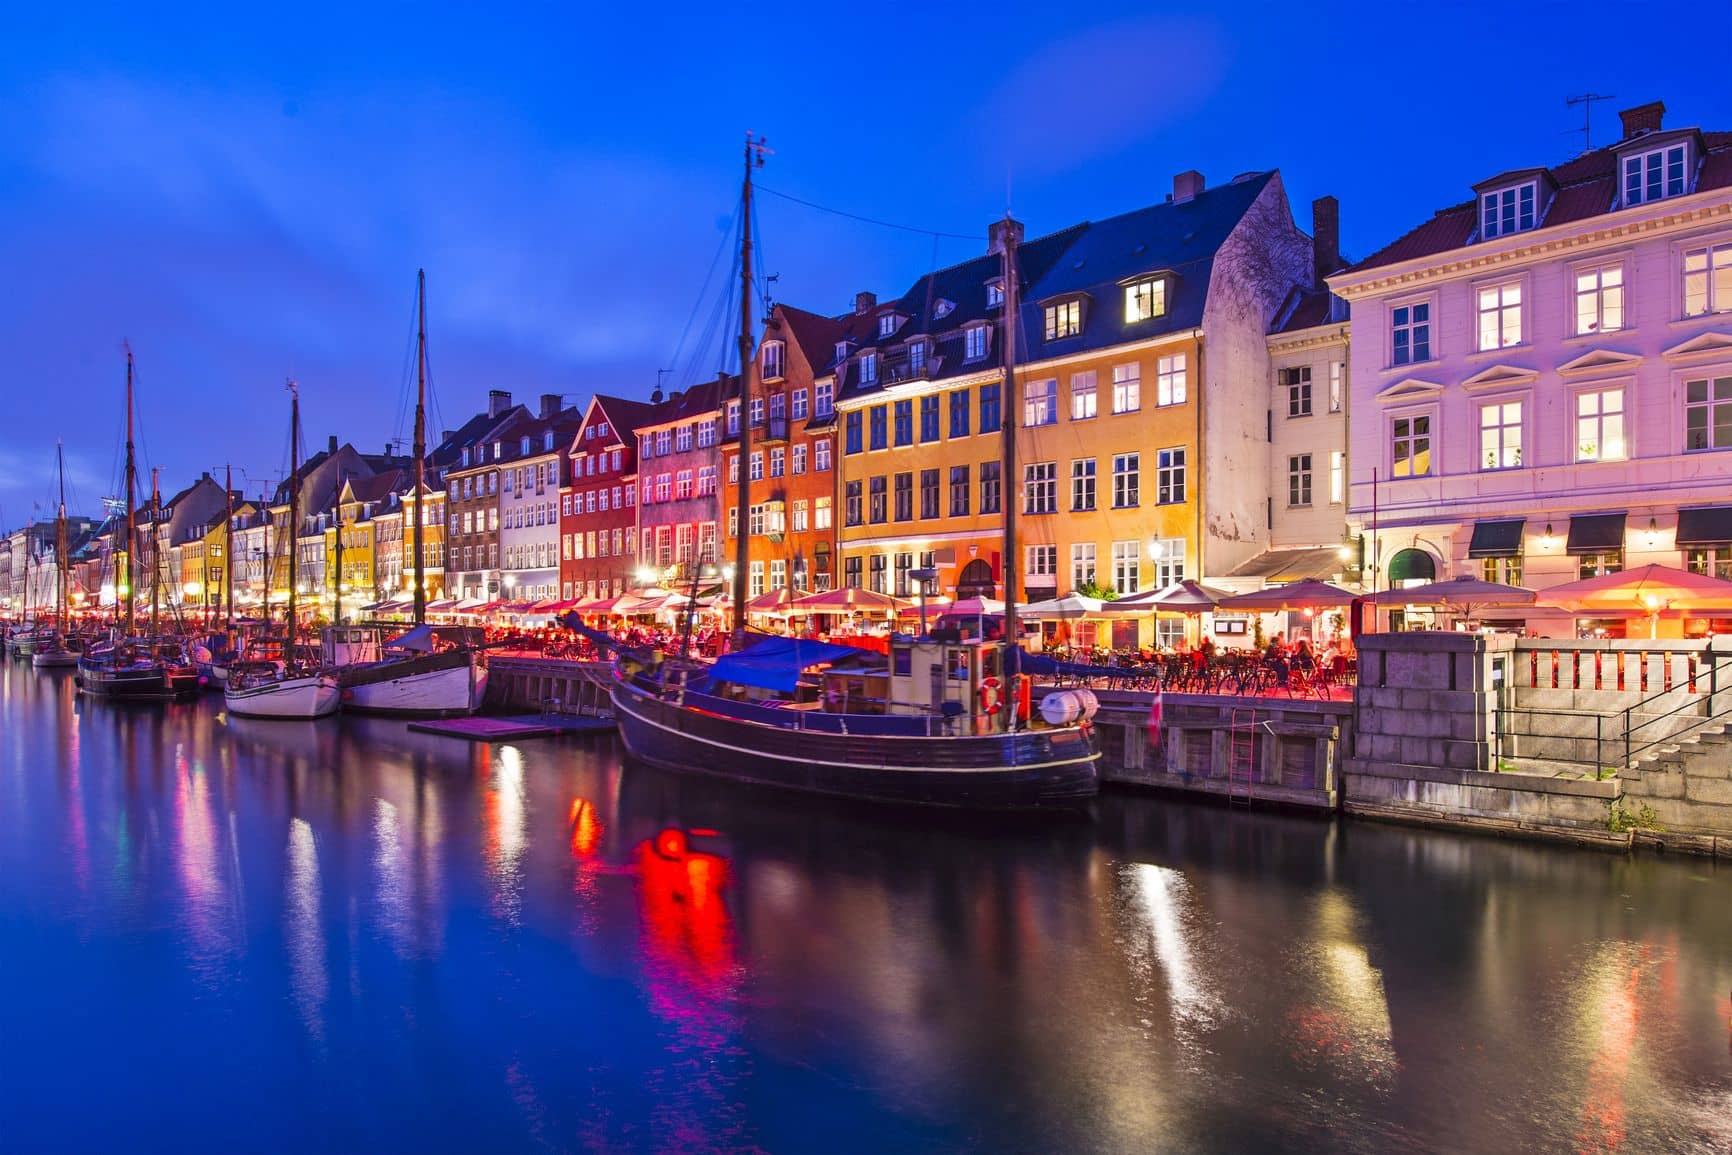 Nyhavn Canal in Copenhagen